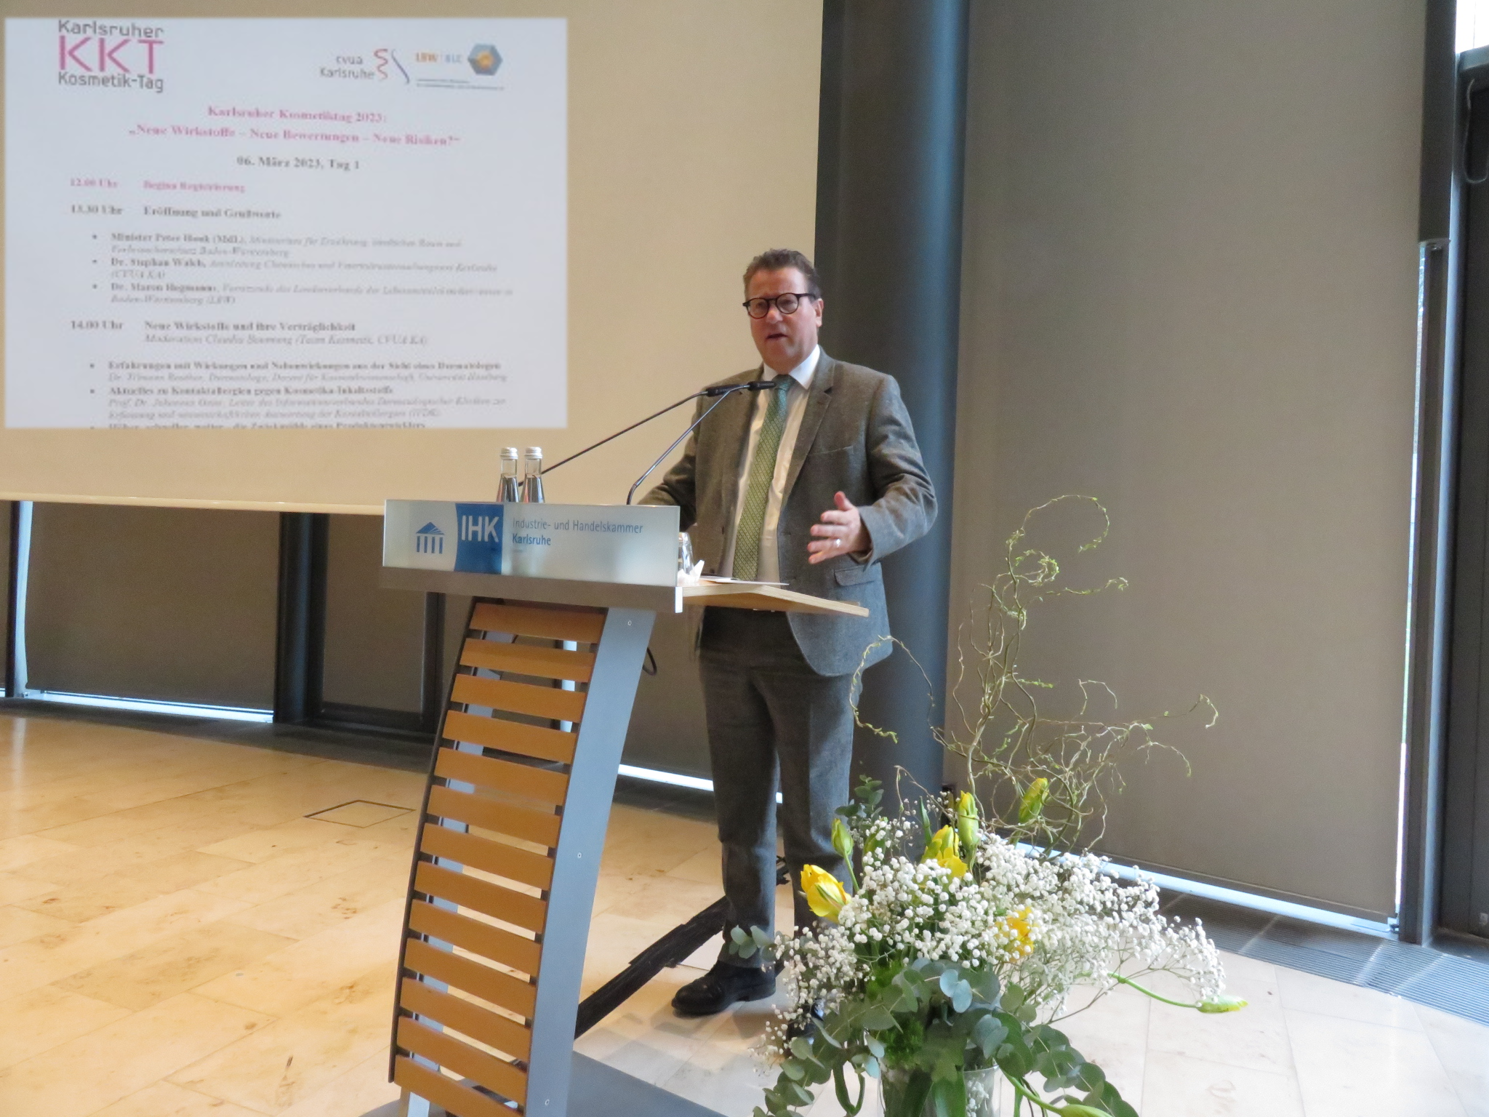 Zu sehen ist Minister Peter Hauk (MdL) vor einem Rednerpult. Im Hintergrund ist die Agenda des KKT 2023 zu sehen.